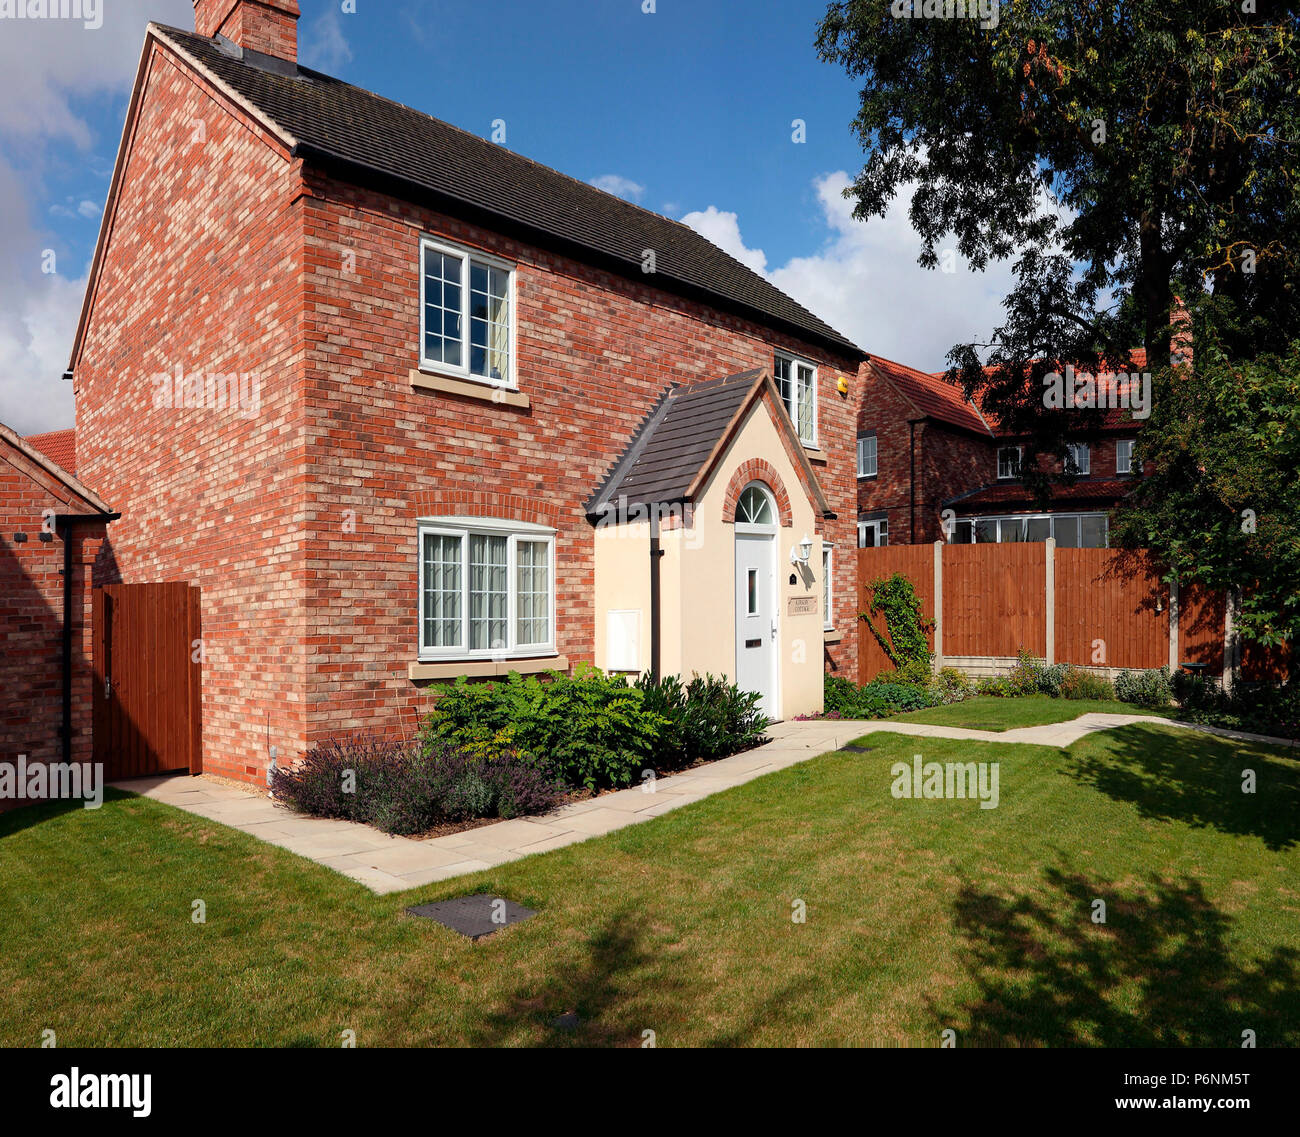 Nouvelle maison de construction dans le style traditionnel anglais cottage, construit en brique rouge, Leicestershire, Angleterre, Royaume-Uni. Banque D'Images